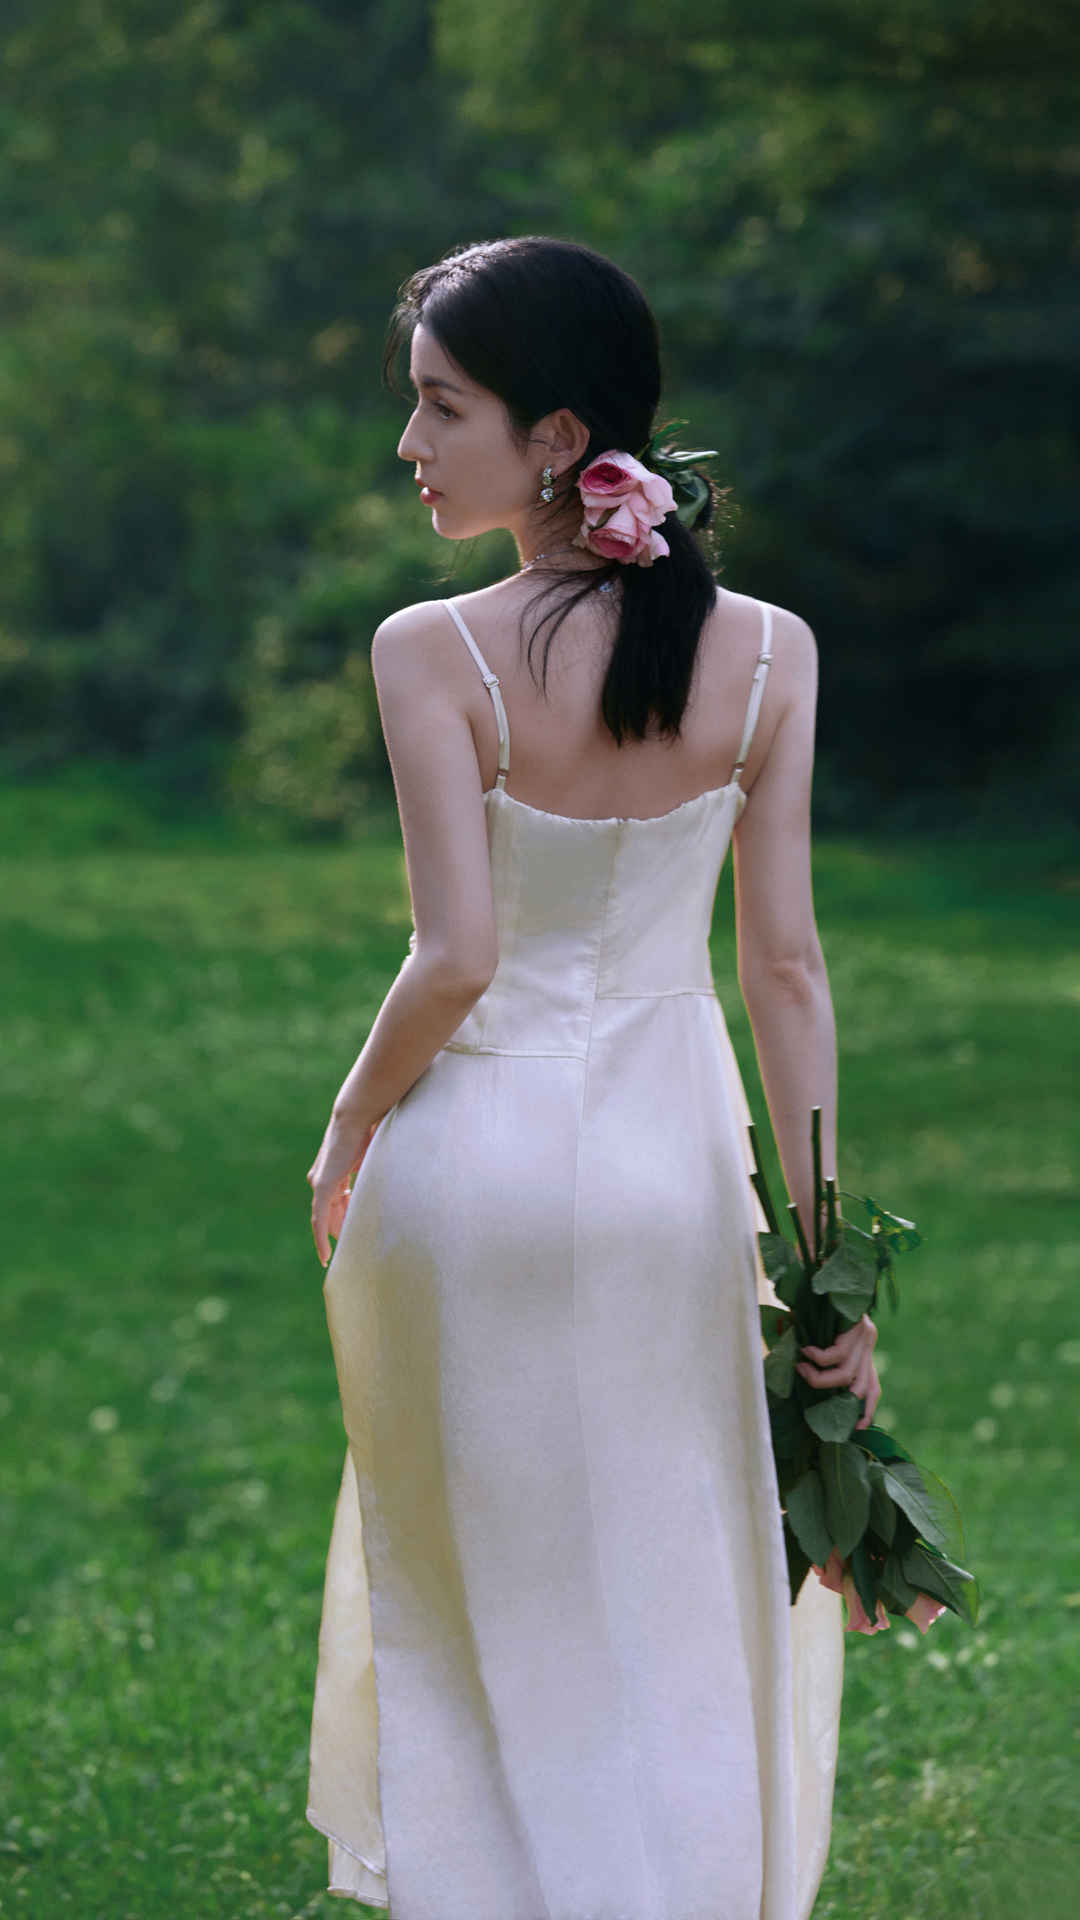 哈尼克孜白色裙子美背户外写真